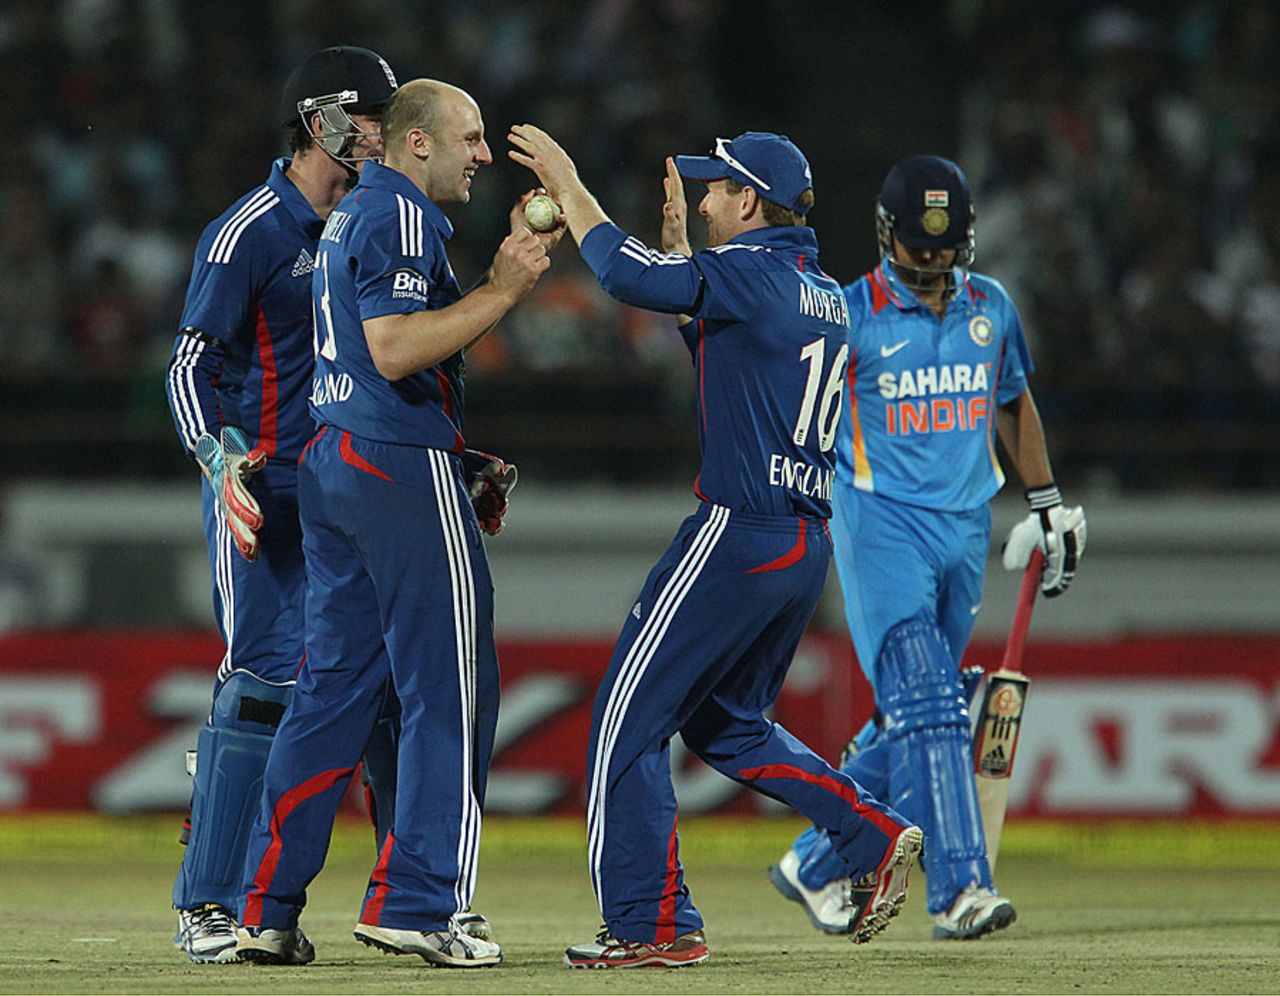 James Tredwell took crucial wickets, India v England, 1st ODI, Rajkot, January 11, 2013